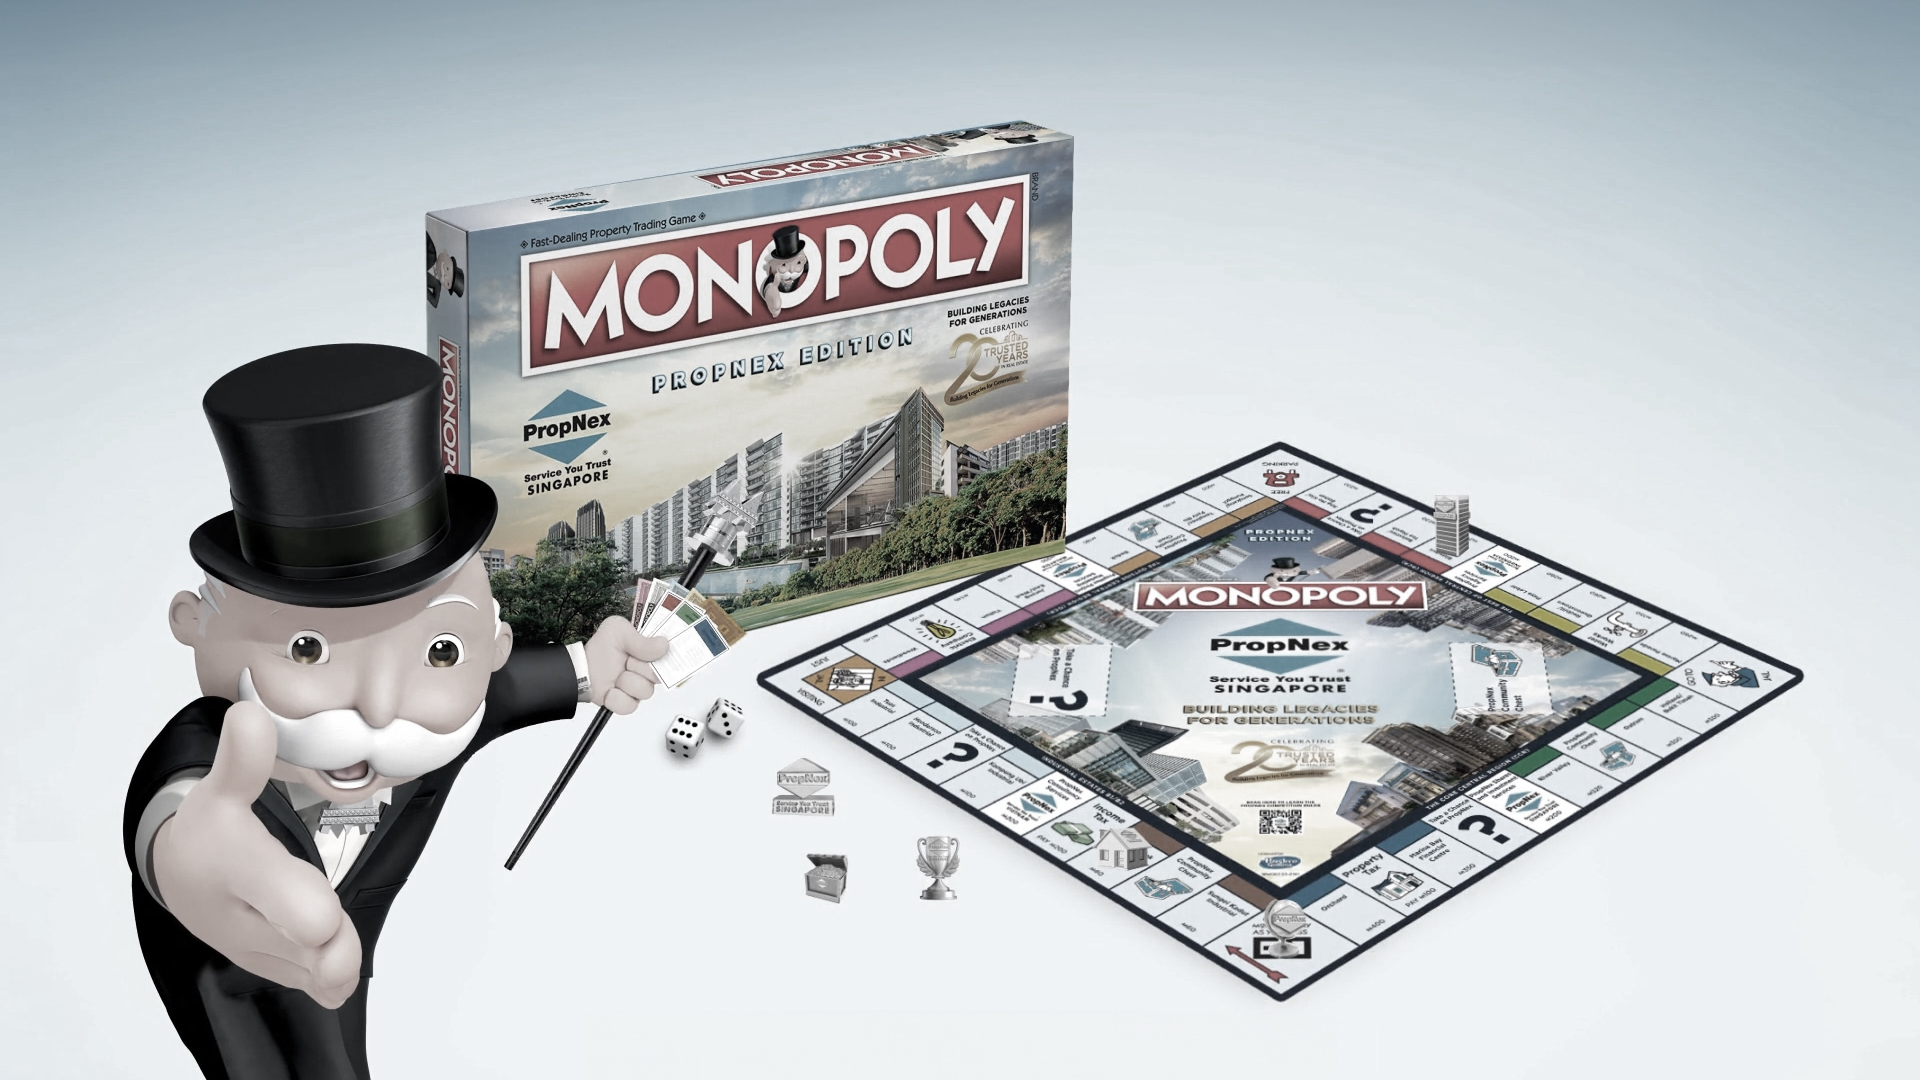 PropNex Monopoly